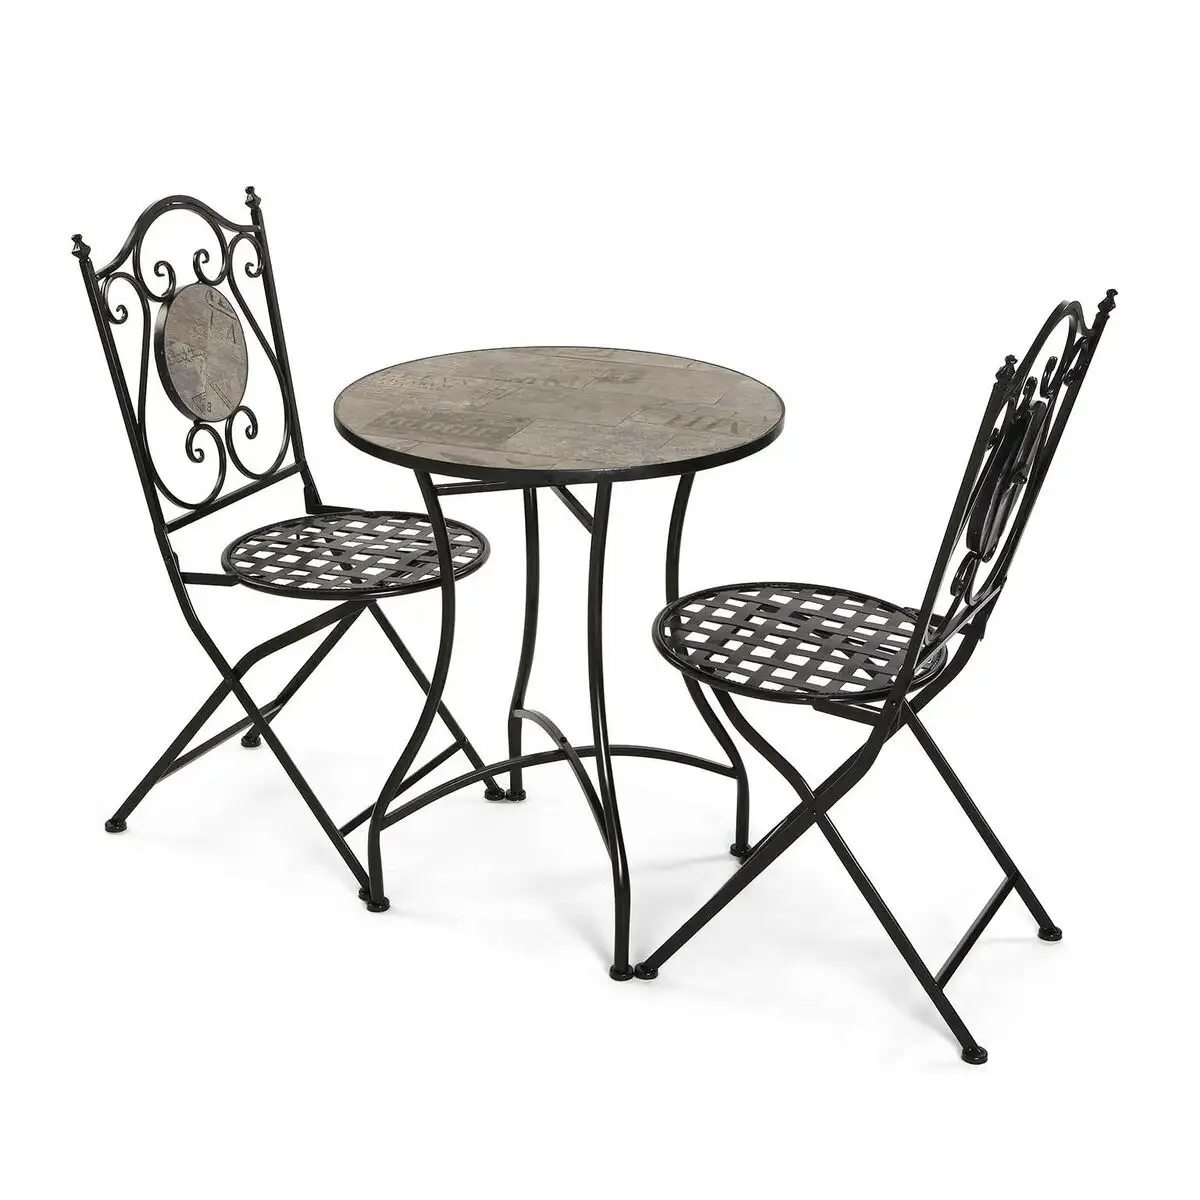 Ensemble table 2 chaises versa ivar noir metal 60 x 71 x 60 cm_9620. DIAYTAR SENEGAL - Votre Plateforme Shopping, Votre Choix Éclairé. Explorez nos offres et choisissez des articles de qualité qui reflètent votre style et vos valeurs.